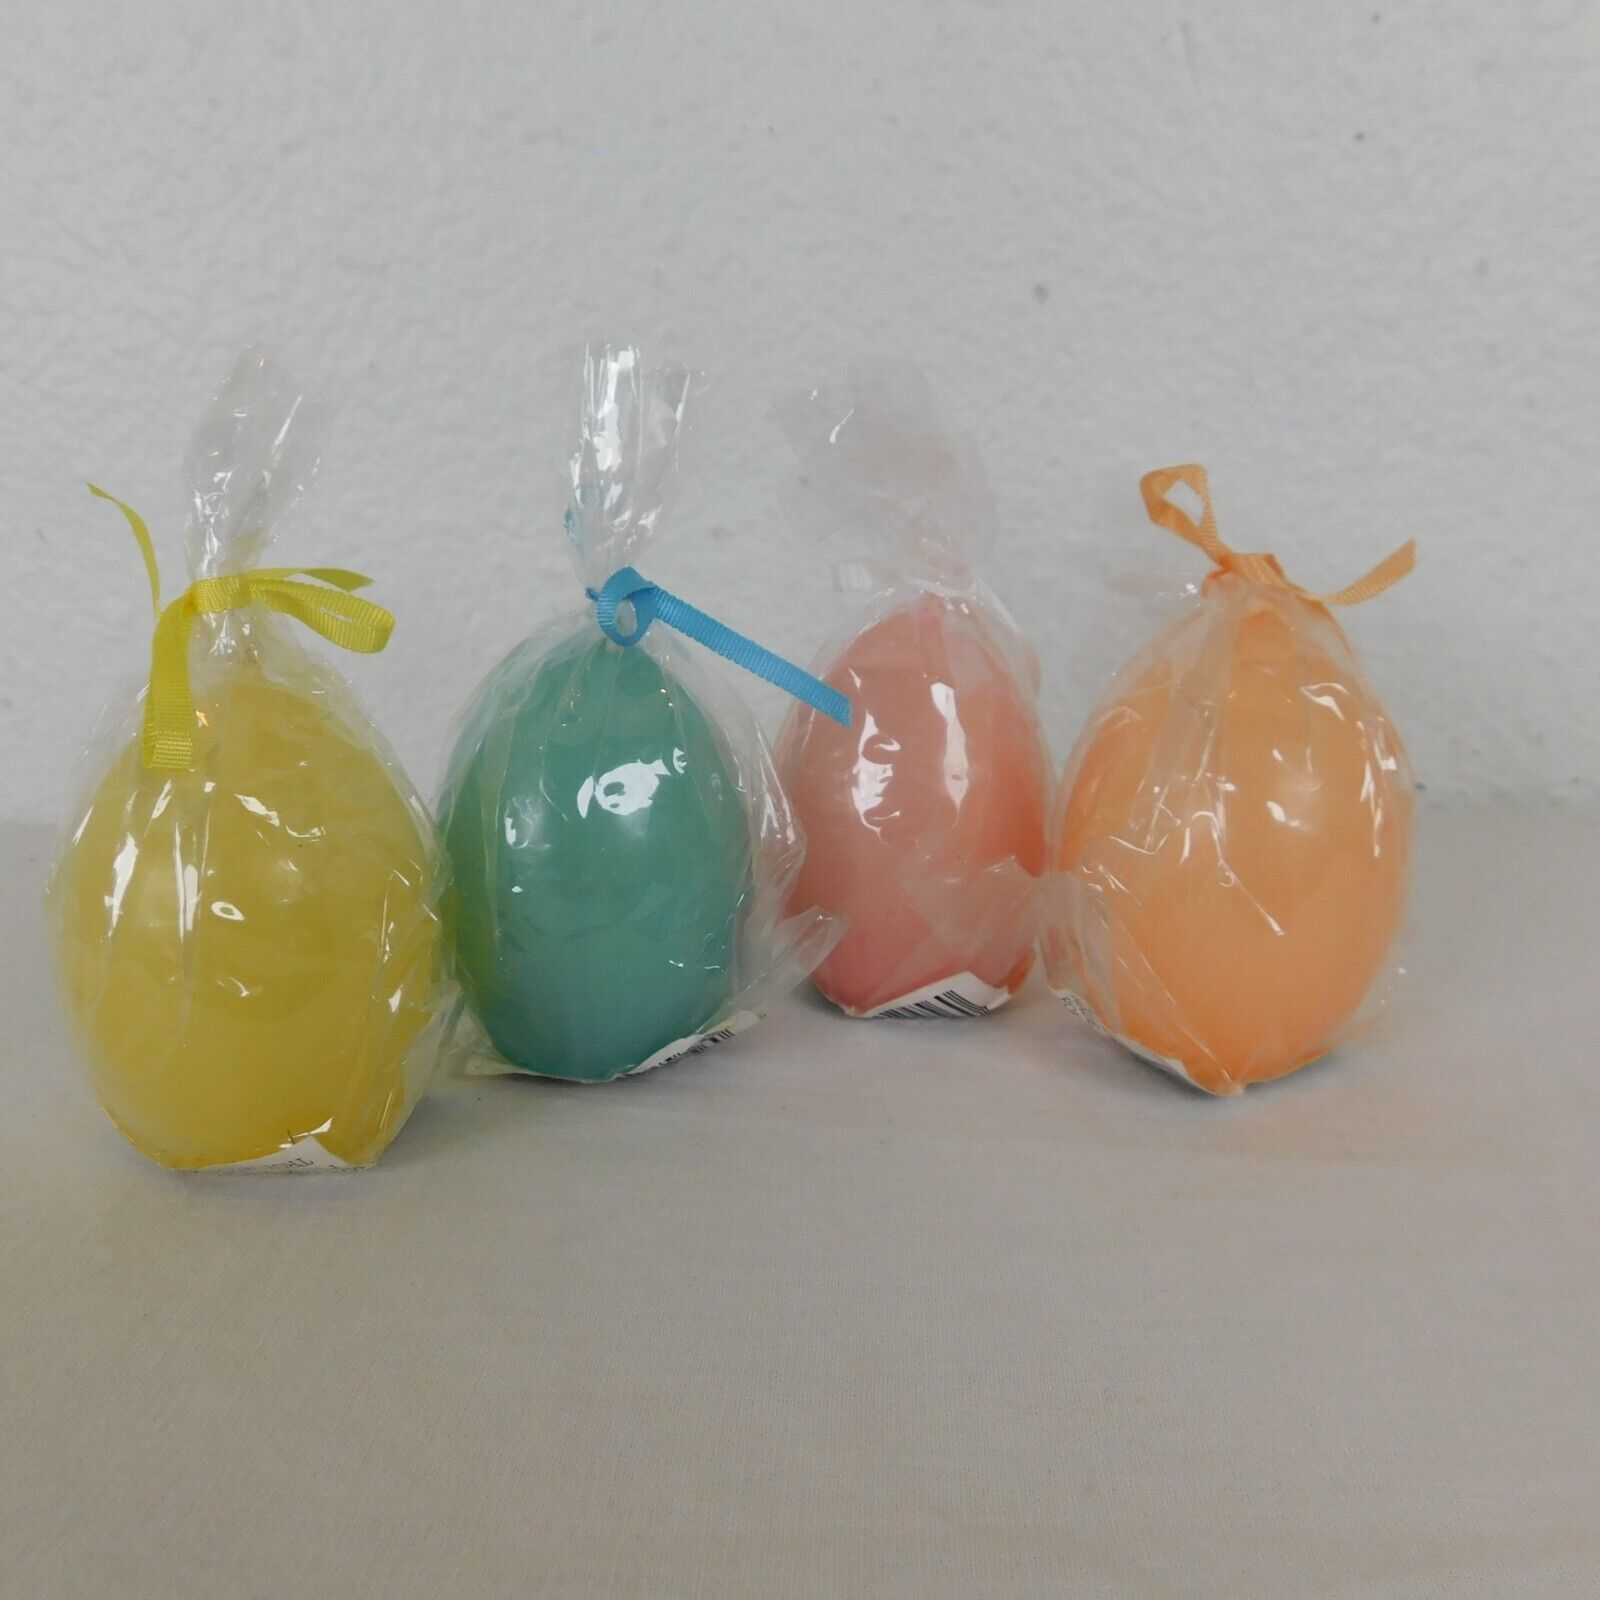 Easter Egg Shaped Candles Lot of 4 Colors New in Packaging 2.5" Vintage K-Mart K-mart